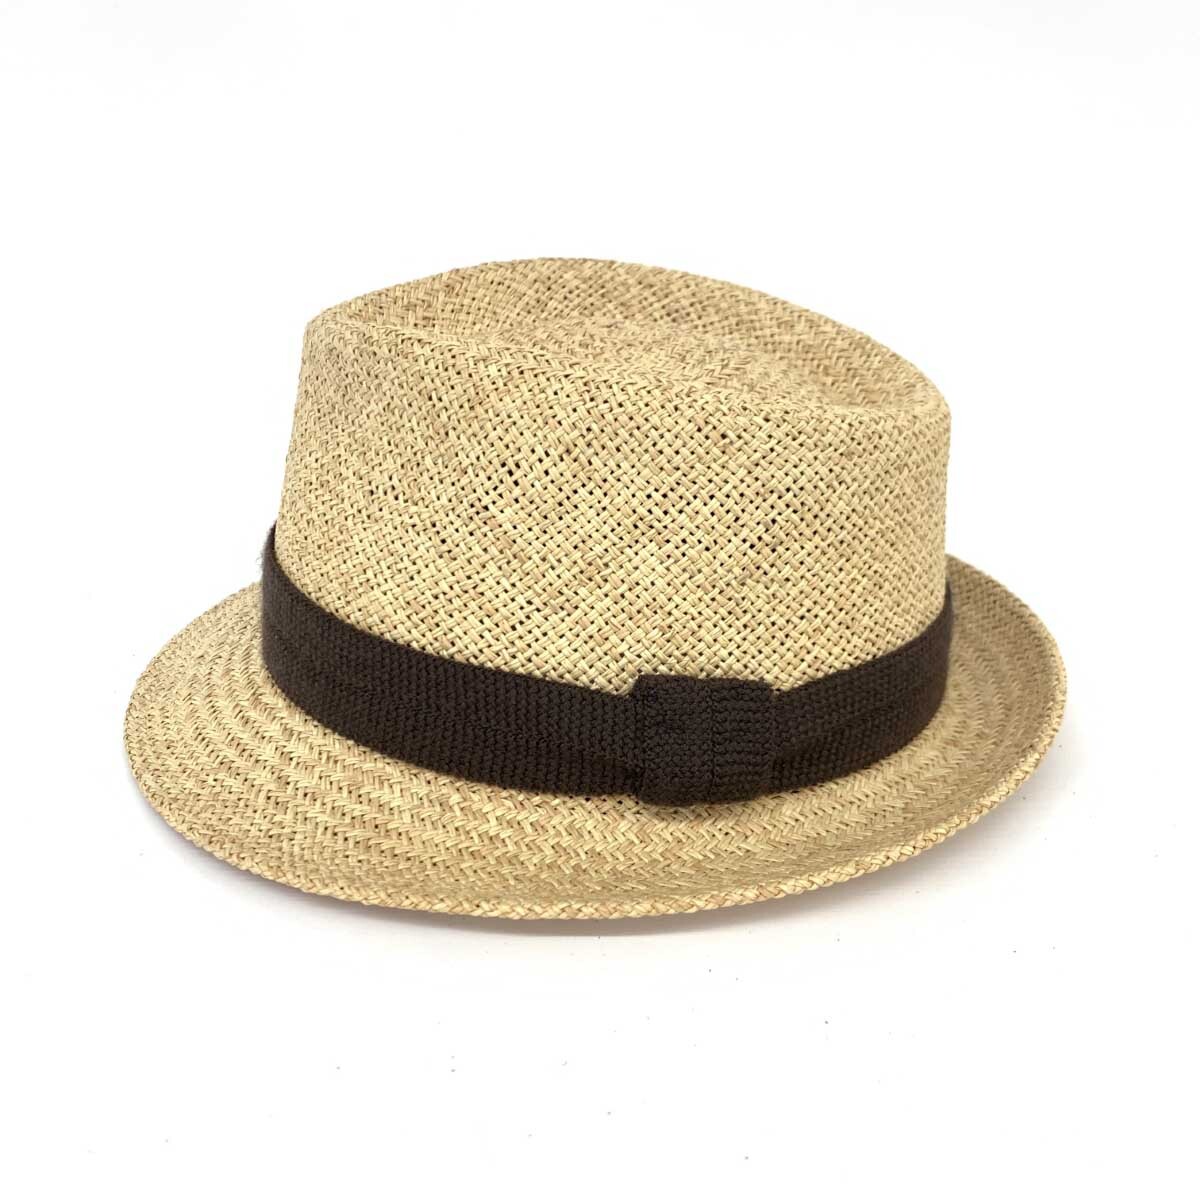 良好◆SORBATTI ソルバッティ パナマハット M/L 58◆ ベージュ メンズ イタリア製 帽子 hat 服飾小物_画像2